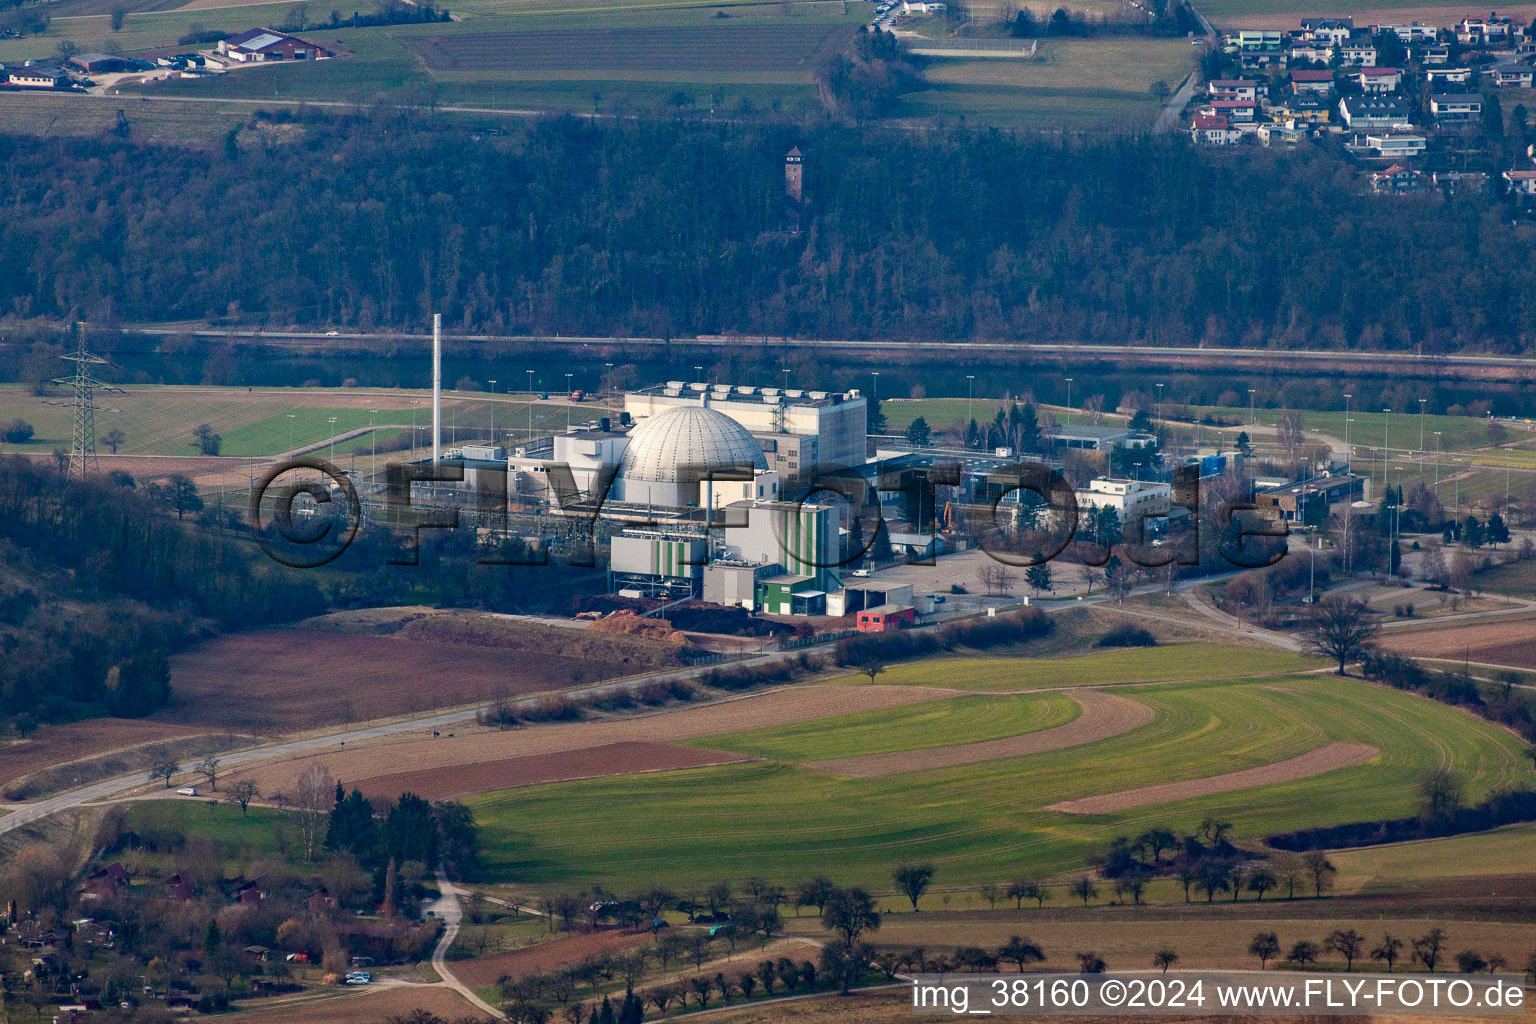 Luftbild von Gebäude der stillgelegten Reaktorblöcke und Anlagen des AKW - KKW Kernkraftwerk EnBW Kernkraft GmbH, Kernkraftwerk Obrigheim in Obrigheim im Bundesland Baden-Württemberg, Deutschland